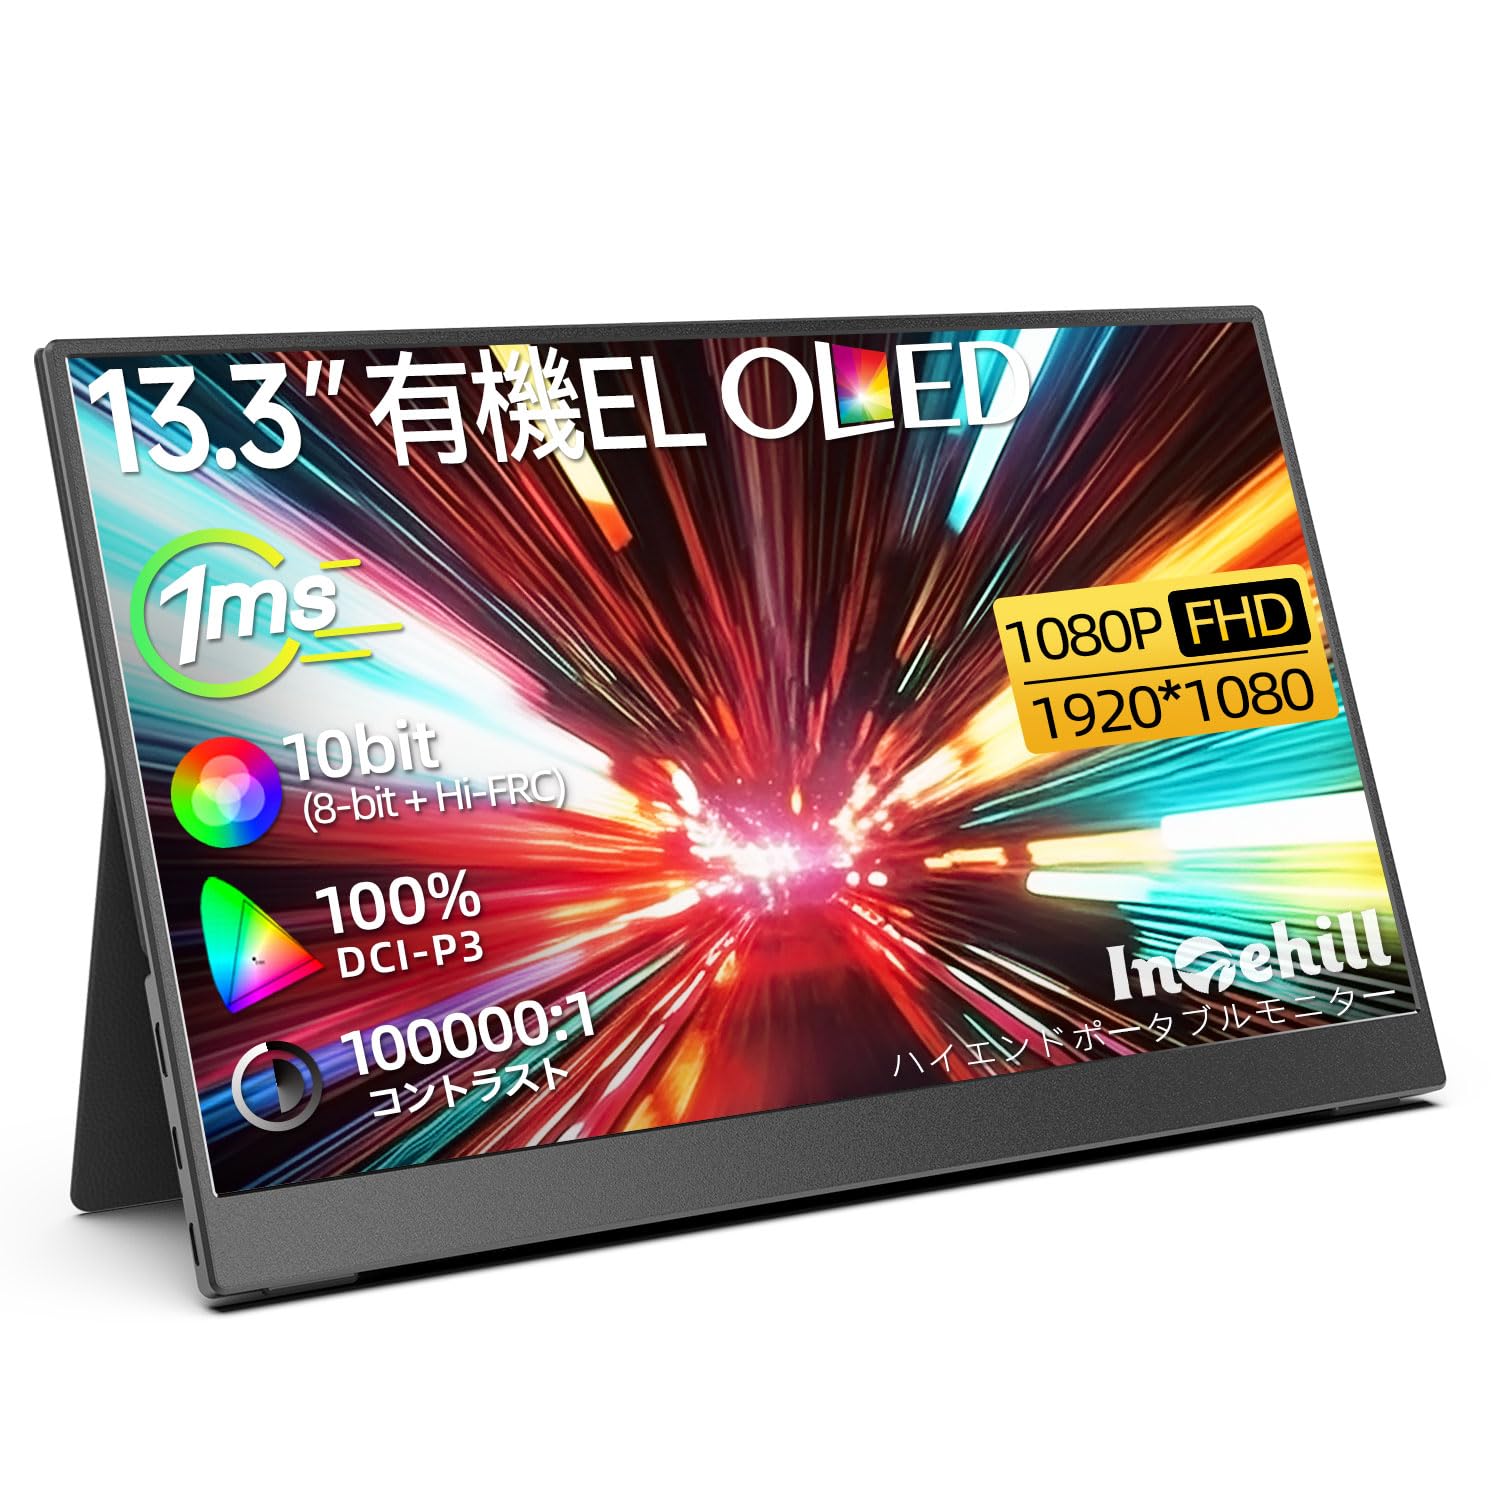 Intehill モバイルモニター 13.3インチ 有機el モニター OLEDパネル自発光 1080P 10Bit DCI-P3 100% 100000:1の高輝度HDR ゲーミングモニター USB Type-C及びミニHDMIポートを備えた Switc